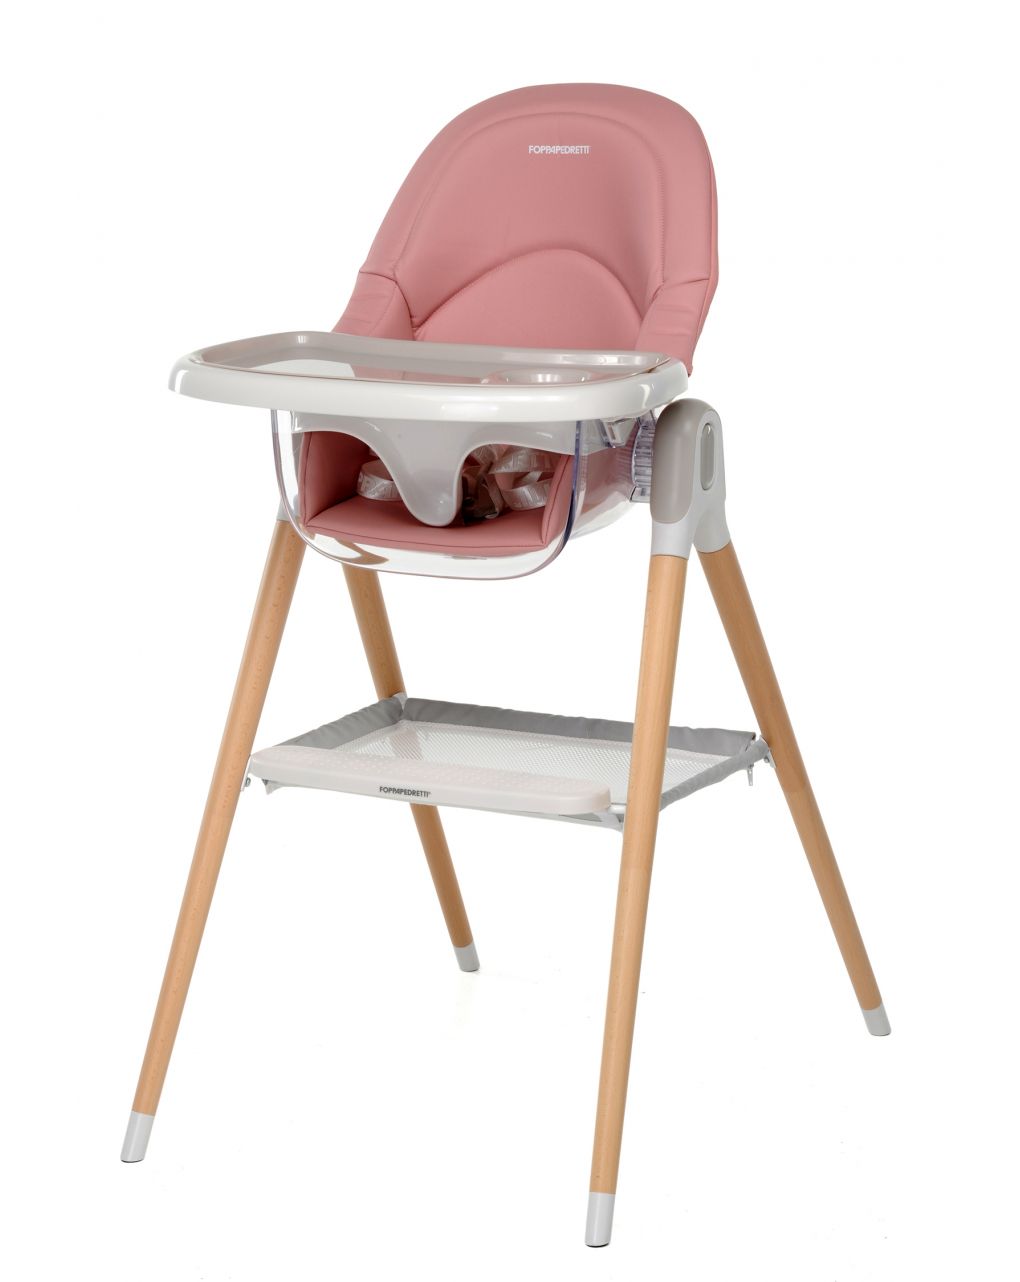 Seggiolone/baby sedia bonito 2 in 1 pink